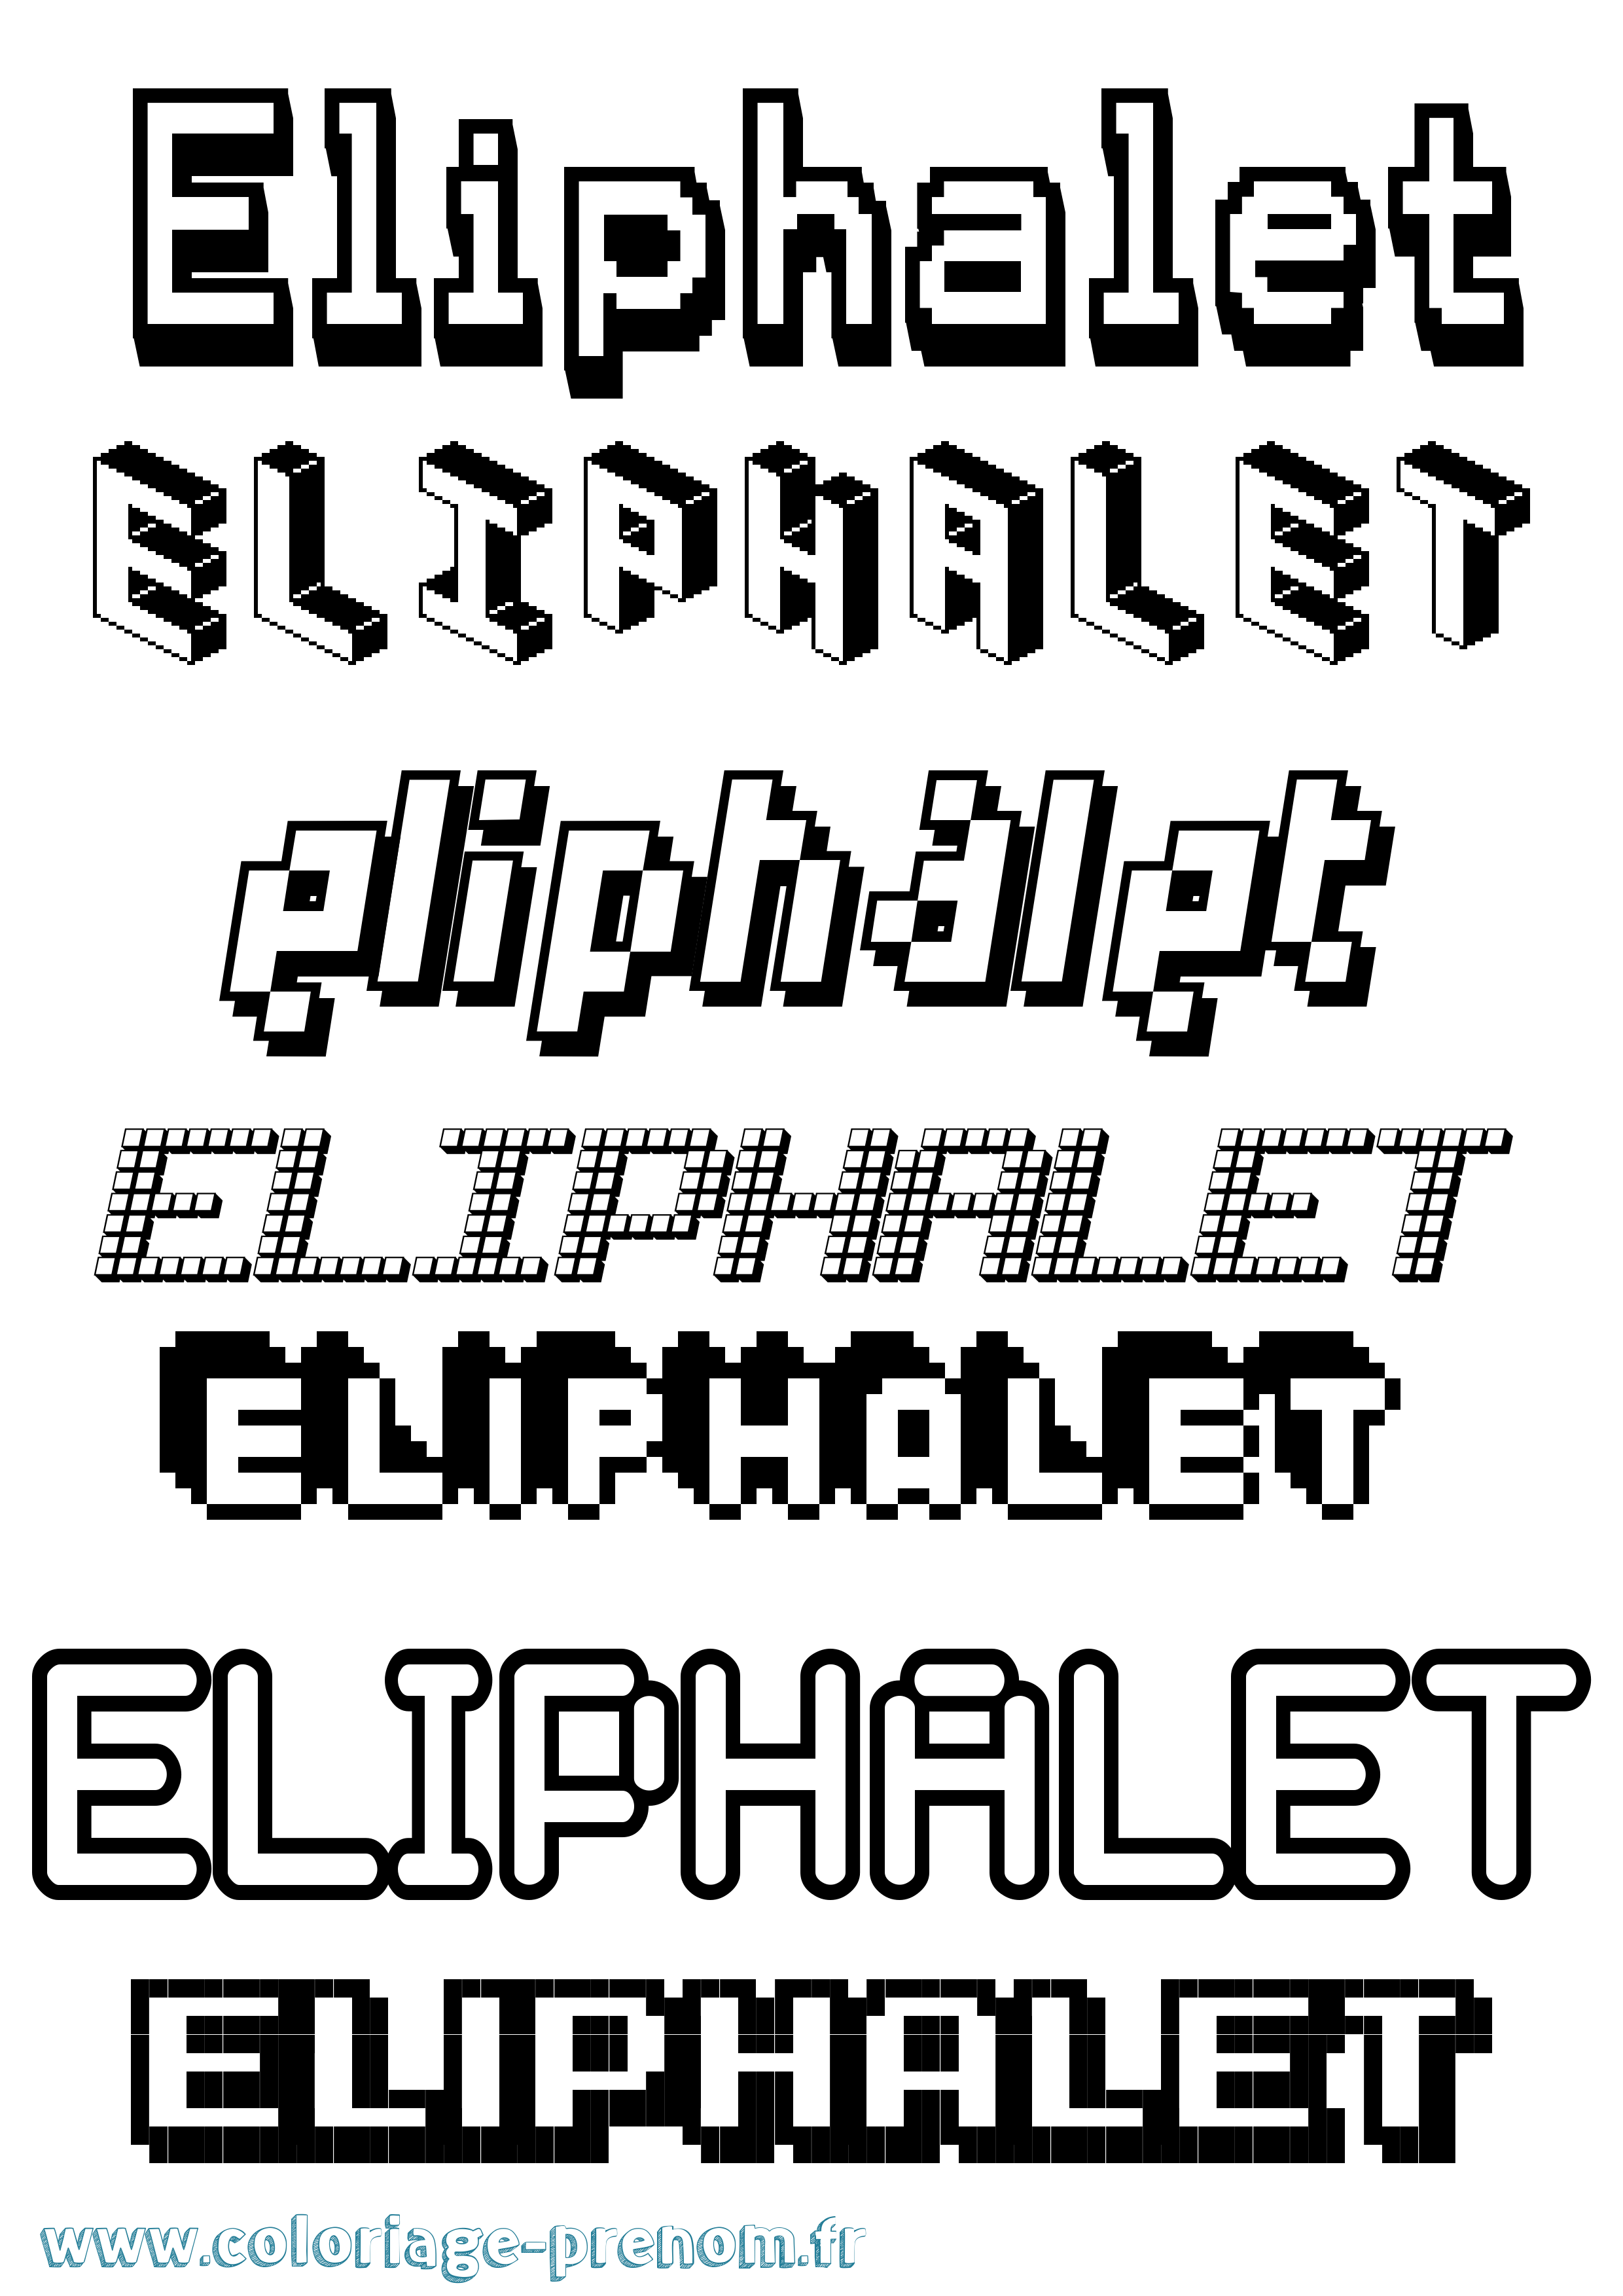 Coloriage prénom Eliphalet Pixel